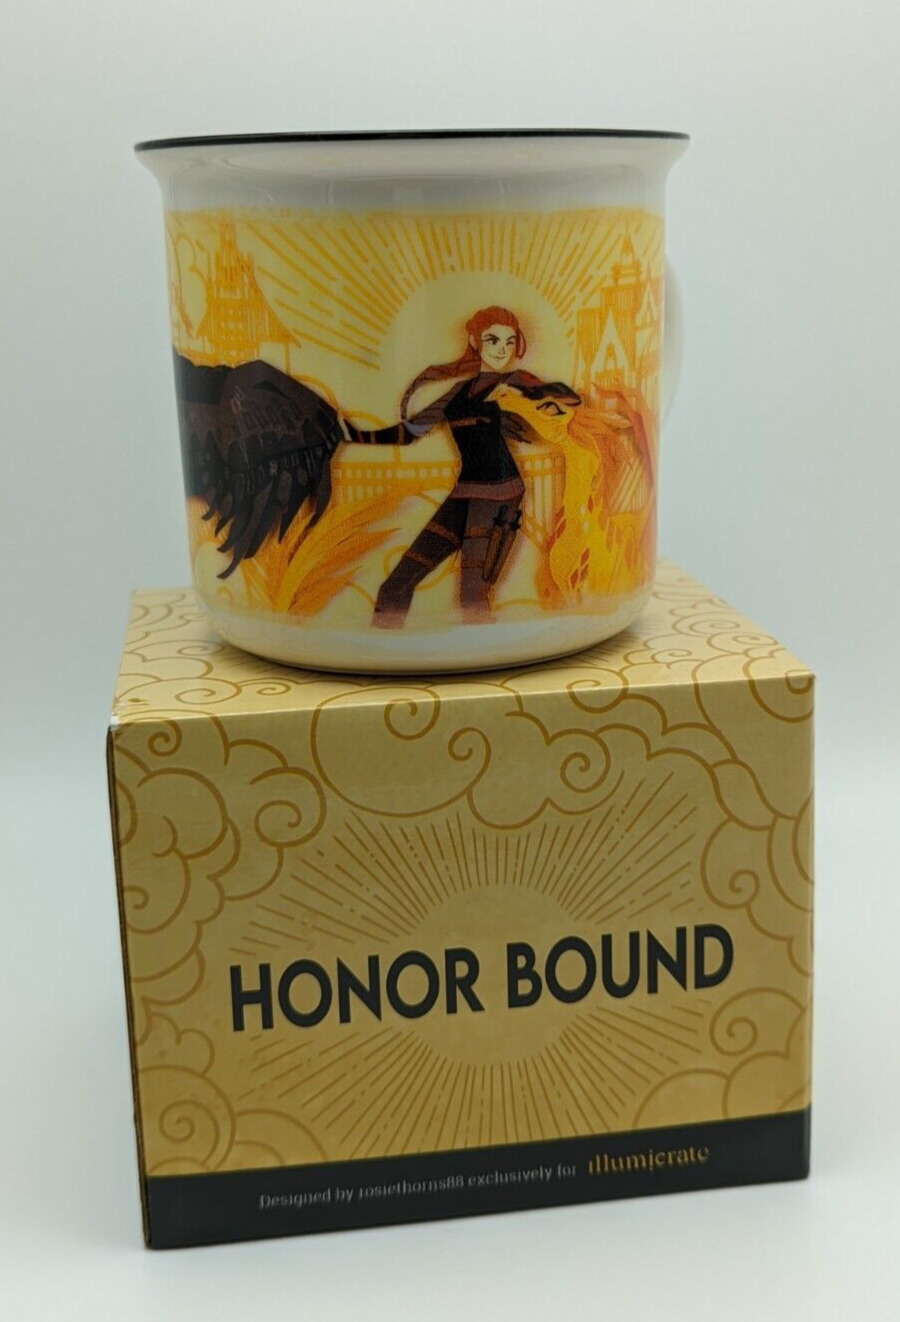 Illumicrate Exclusive Honor Bound Rosiethorns88 Fourth Wing Ceramic Mug